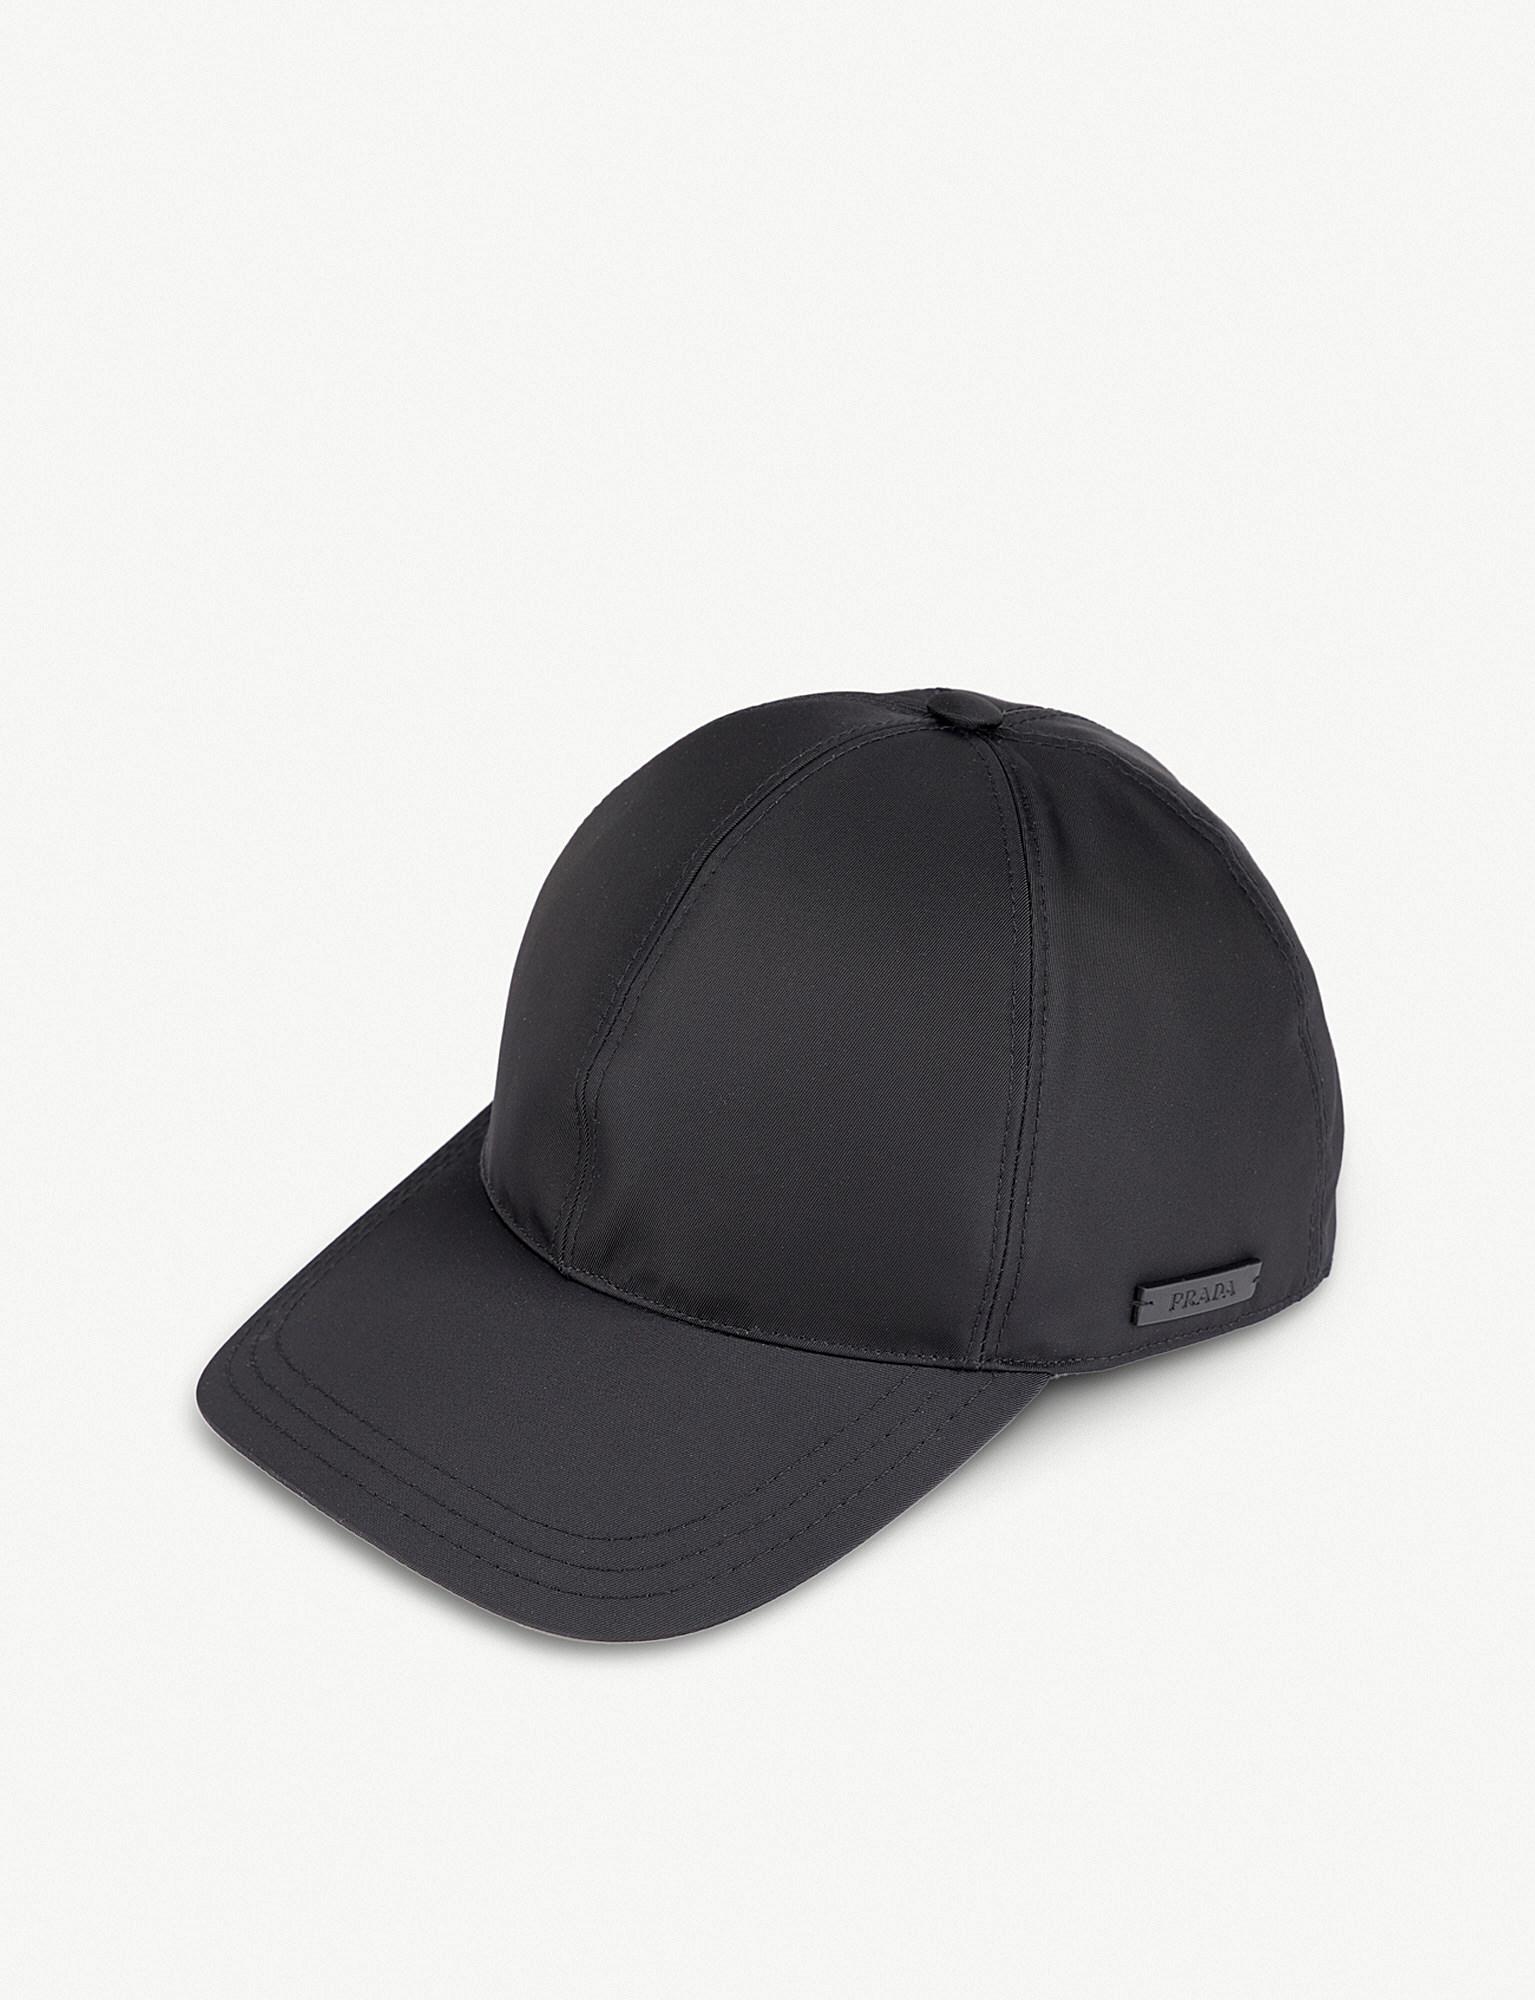 Prada Synthetic Logo-embossed Nylon Baseball Cap in Black for Men - Lyst